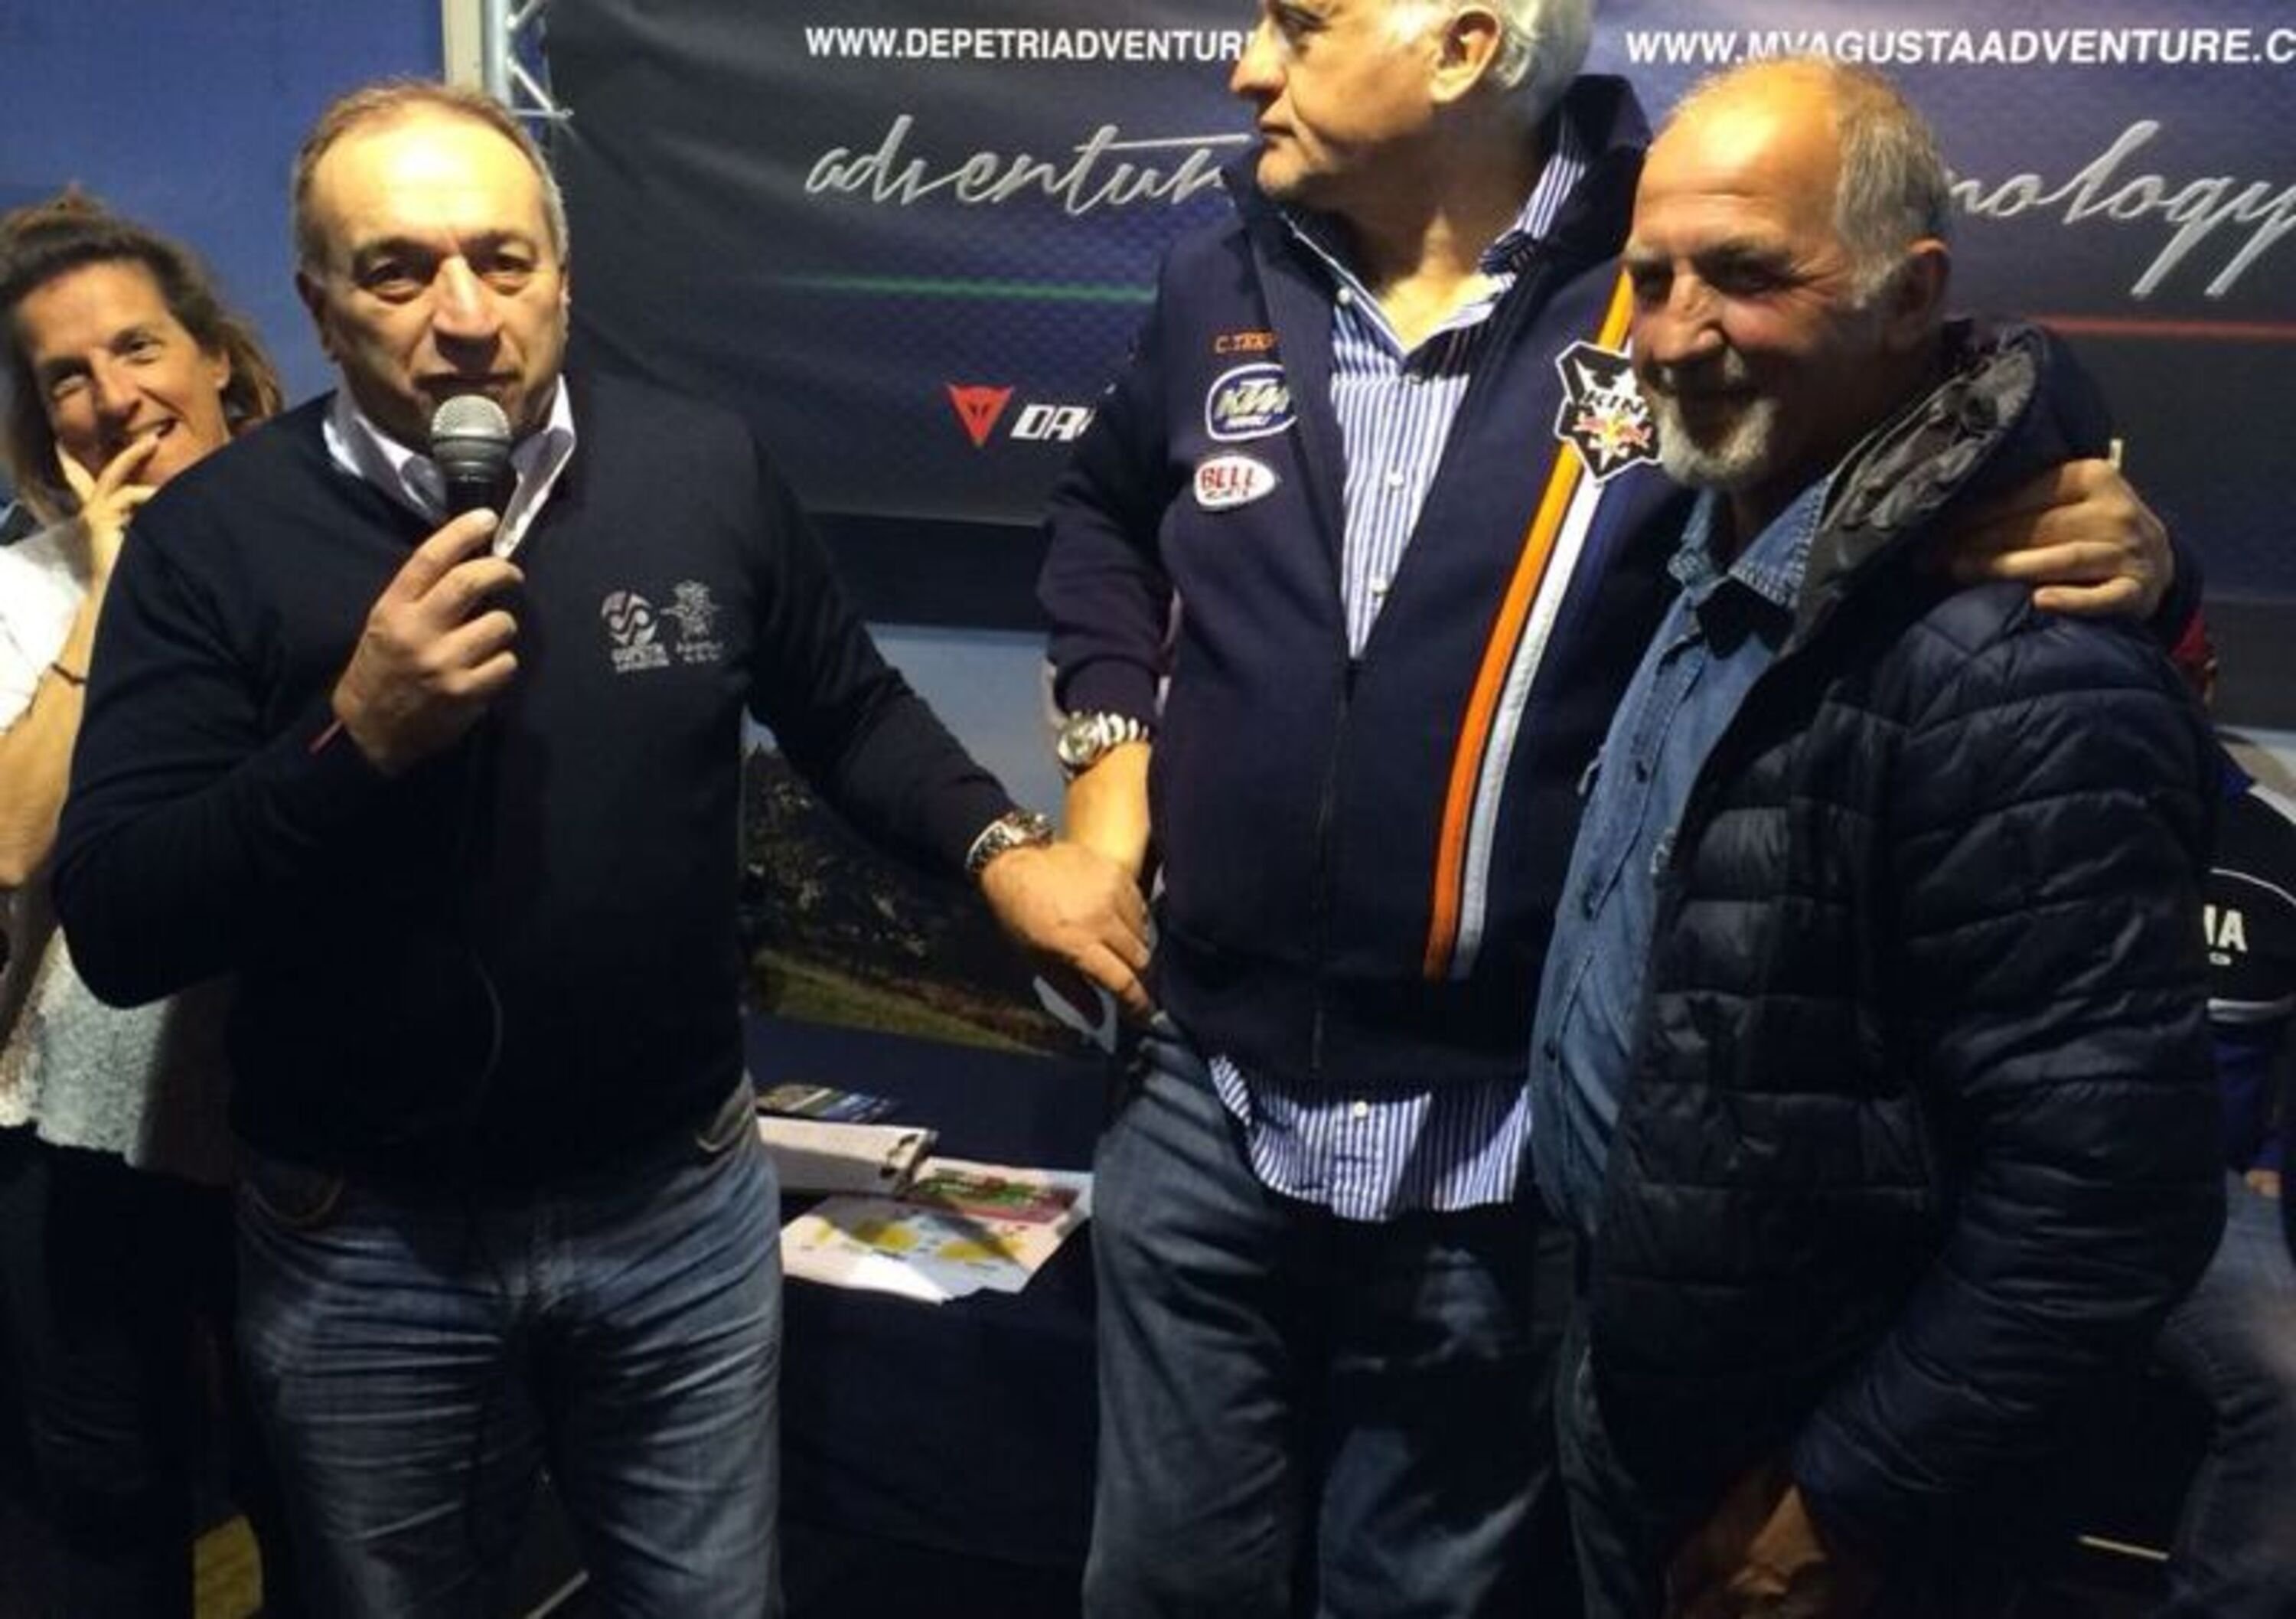 Alessandro &ldquo;Ciro&rdquo; De Petri: &ldquo;MV Agusta Adventure, turismo di altissimo livello&rdquo;